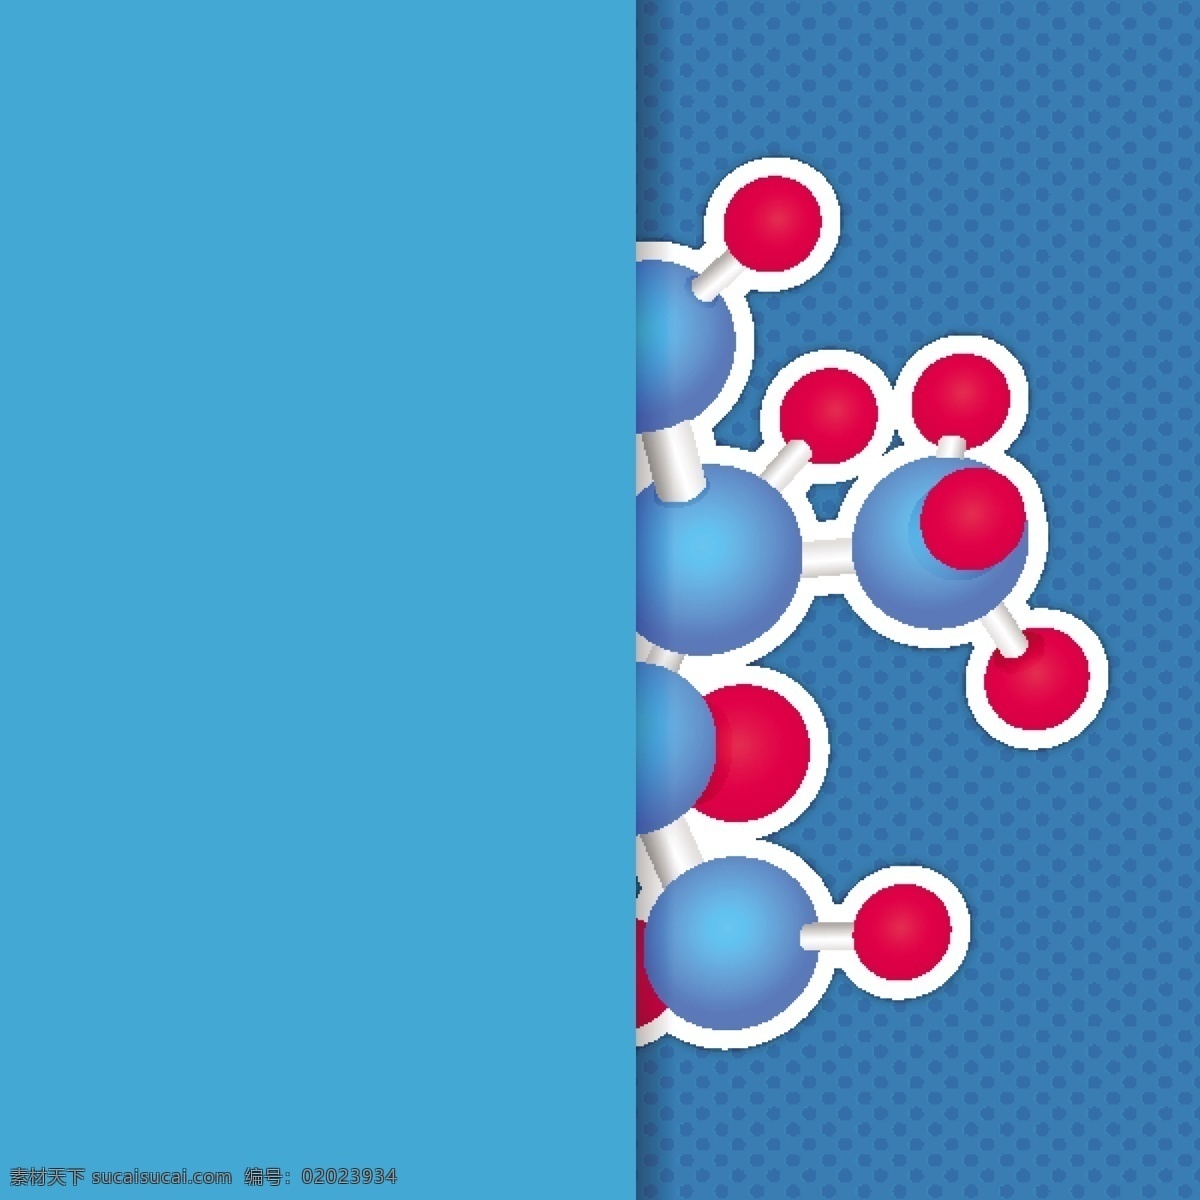 分子结构 分子 化学 物理 科学概念 科学图标 科技图标 办公学习 生活百科 矢量素材 青色 天蓝色